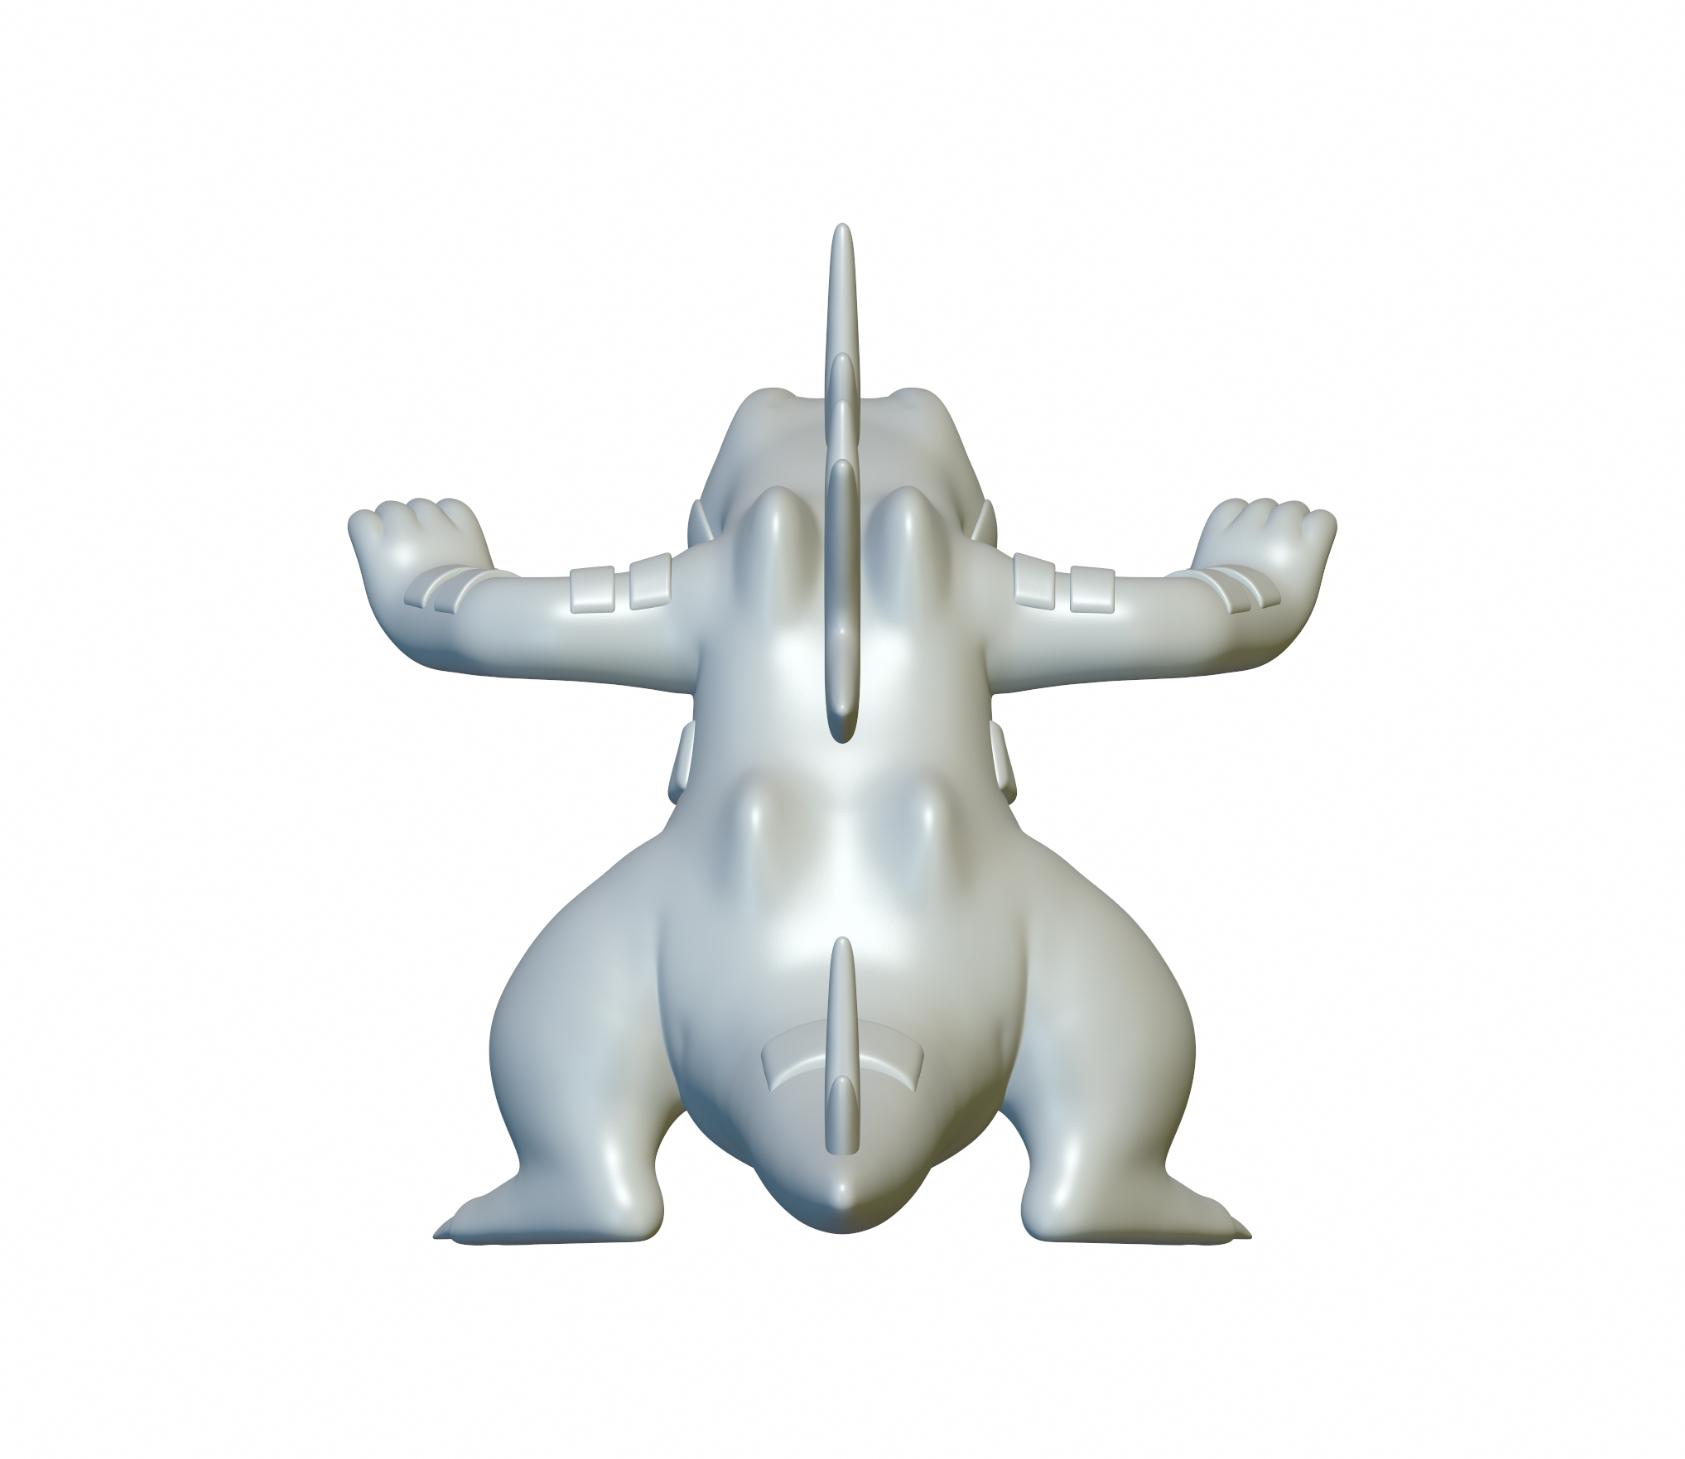 Pokemon Feraligatr #160 - Optimized for 3D Printing  3d model